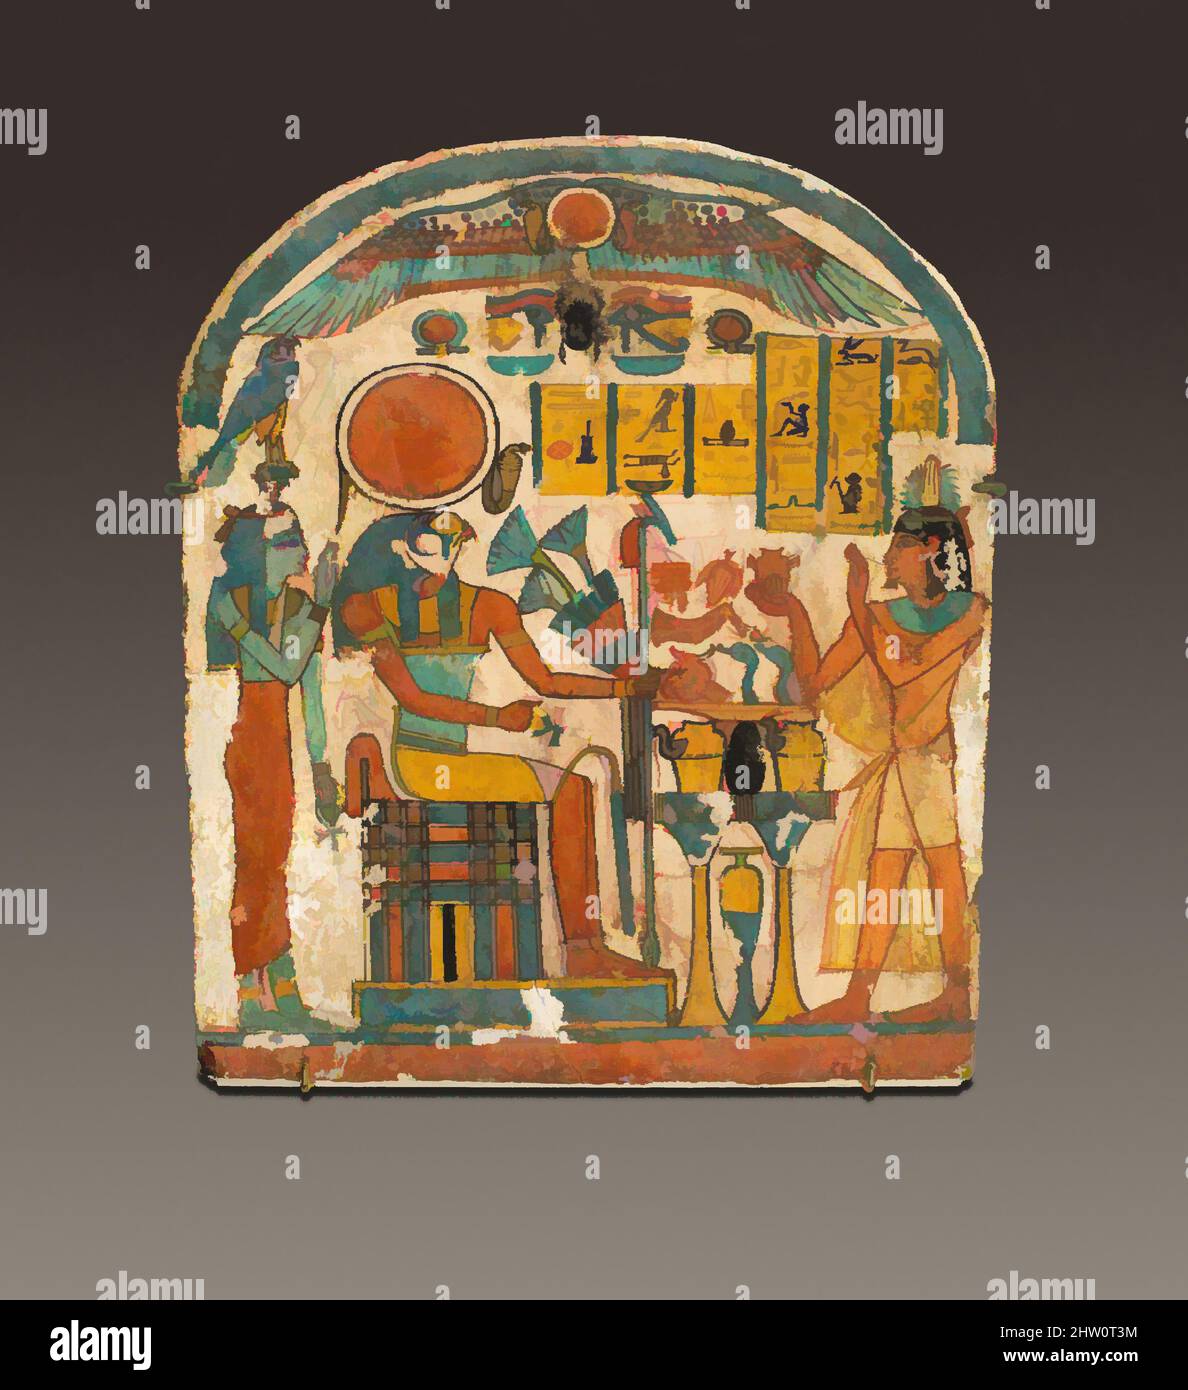 Kunst inspiriert von Stela von Saiah, Dritte Zwischenperiode, Dynastie 22, ca. 825–712 v. Chr., aus Ägypten, Oberägypten, Theben, Deir el-Bahri, Grab, 1921–22, Holz, Gesso, Farbe, H. 23,8 cm (9 3/8 in.), Dies ist eine von vier Stelen, die in der Nähe der Eingangstür der Backsteinkapelle der Familie der klassischen Werke gefunden wurden, die von Artotop mit einem Schuss Moderne modernisiert wurden. Formen, Farbe und Wert, auffällige visuelle Wirkung auf Kunst. Emotionen durch Freiheit von Kunstwerken auf zeitgemäße Weise. Eine zeitlose Botschaft, die eine wild kreative neue Richtung verfolgt. Künstler, die sich dem digitalen Medium zuwenden und die Artotop NFT erschaffen Stockfoto